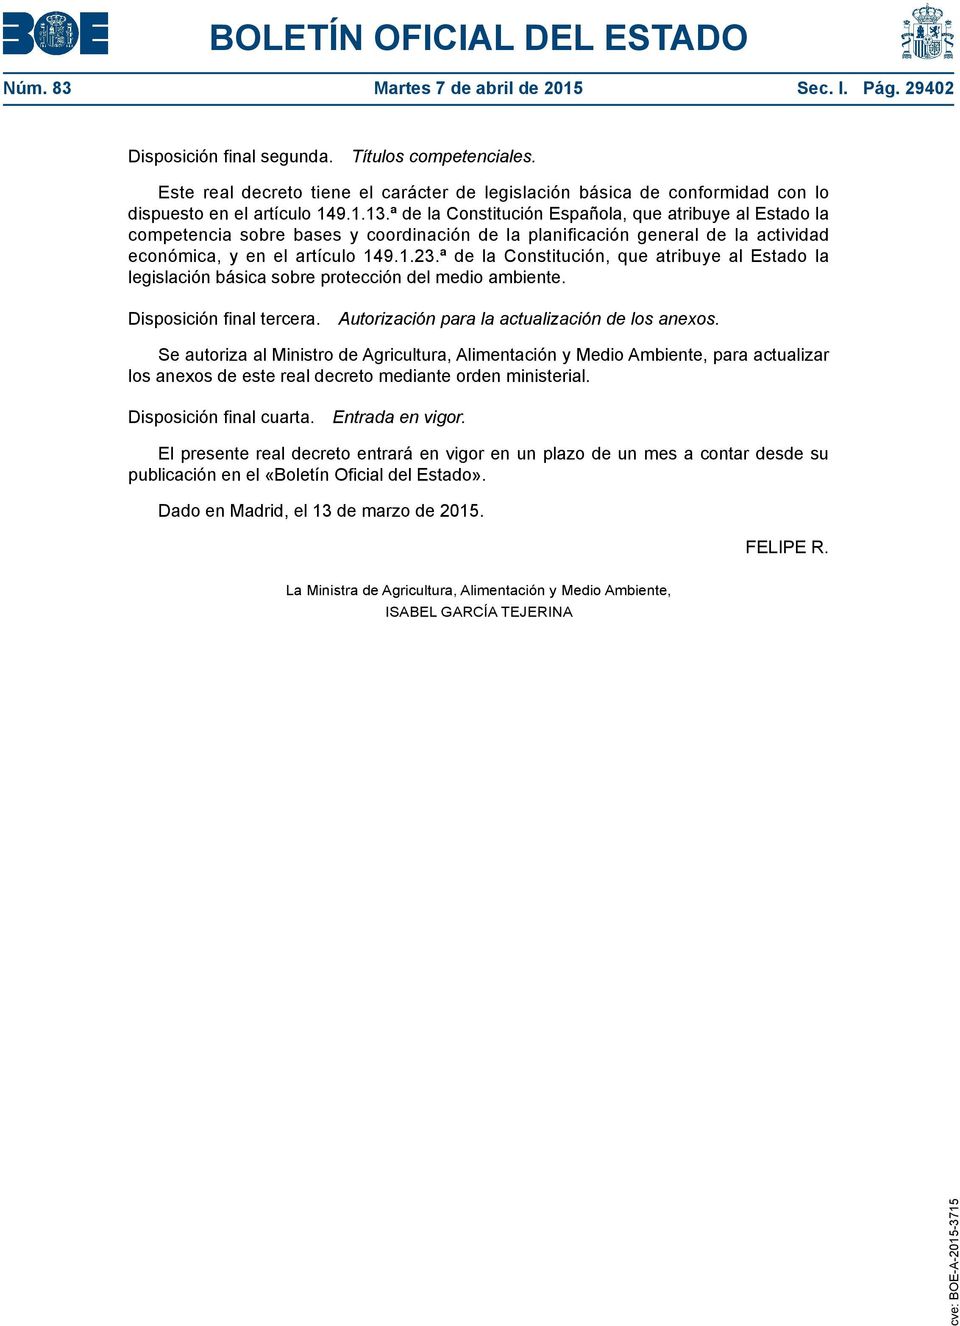 ª de la Constitución Española, que atribuye al Estado la competencia sobre bases y coordinación de la planificación general de la actividad económica, y en el artículo 149.1.23.